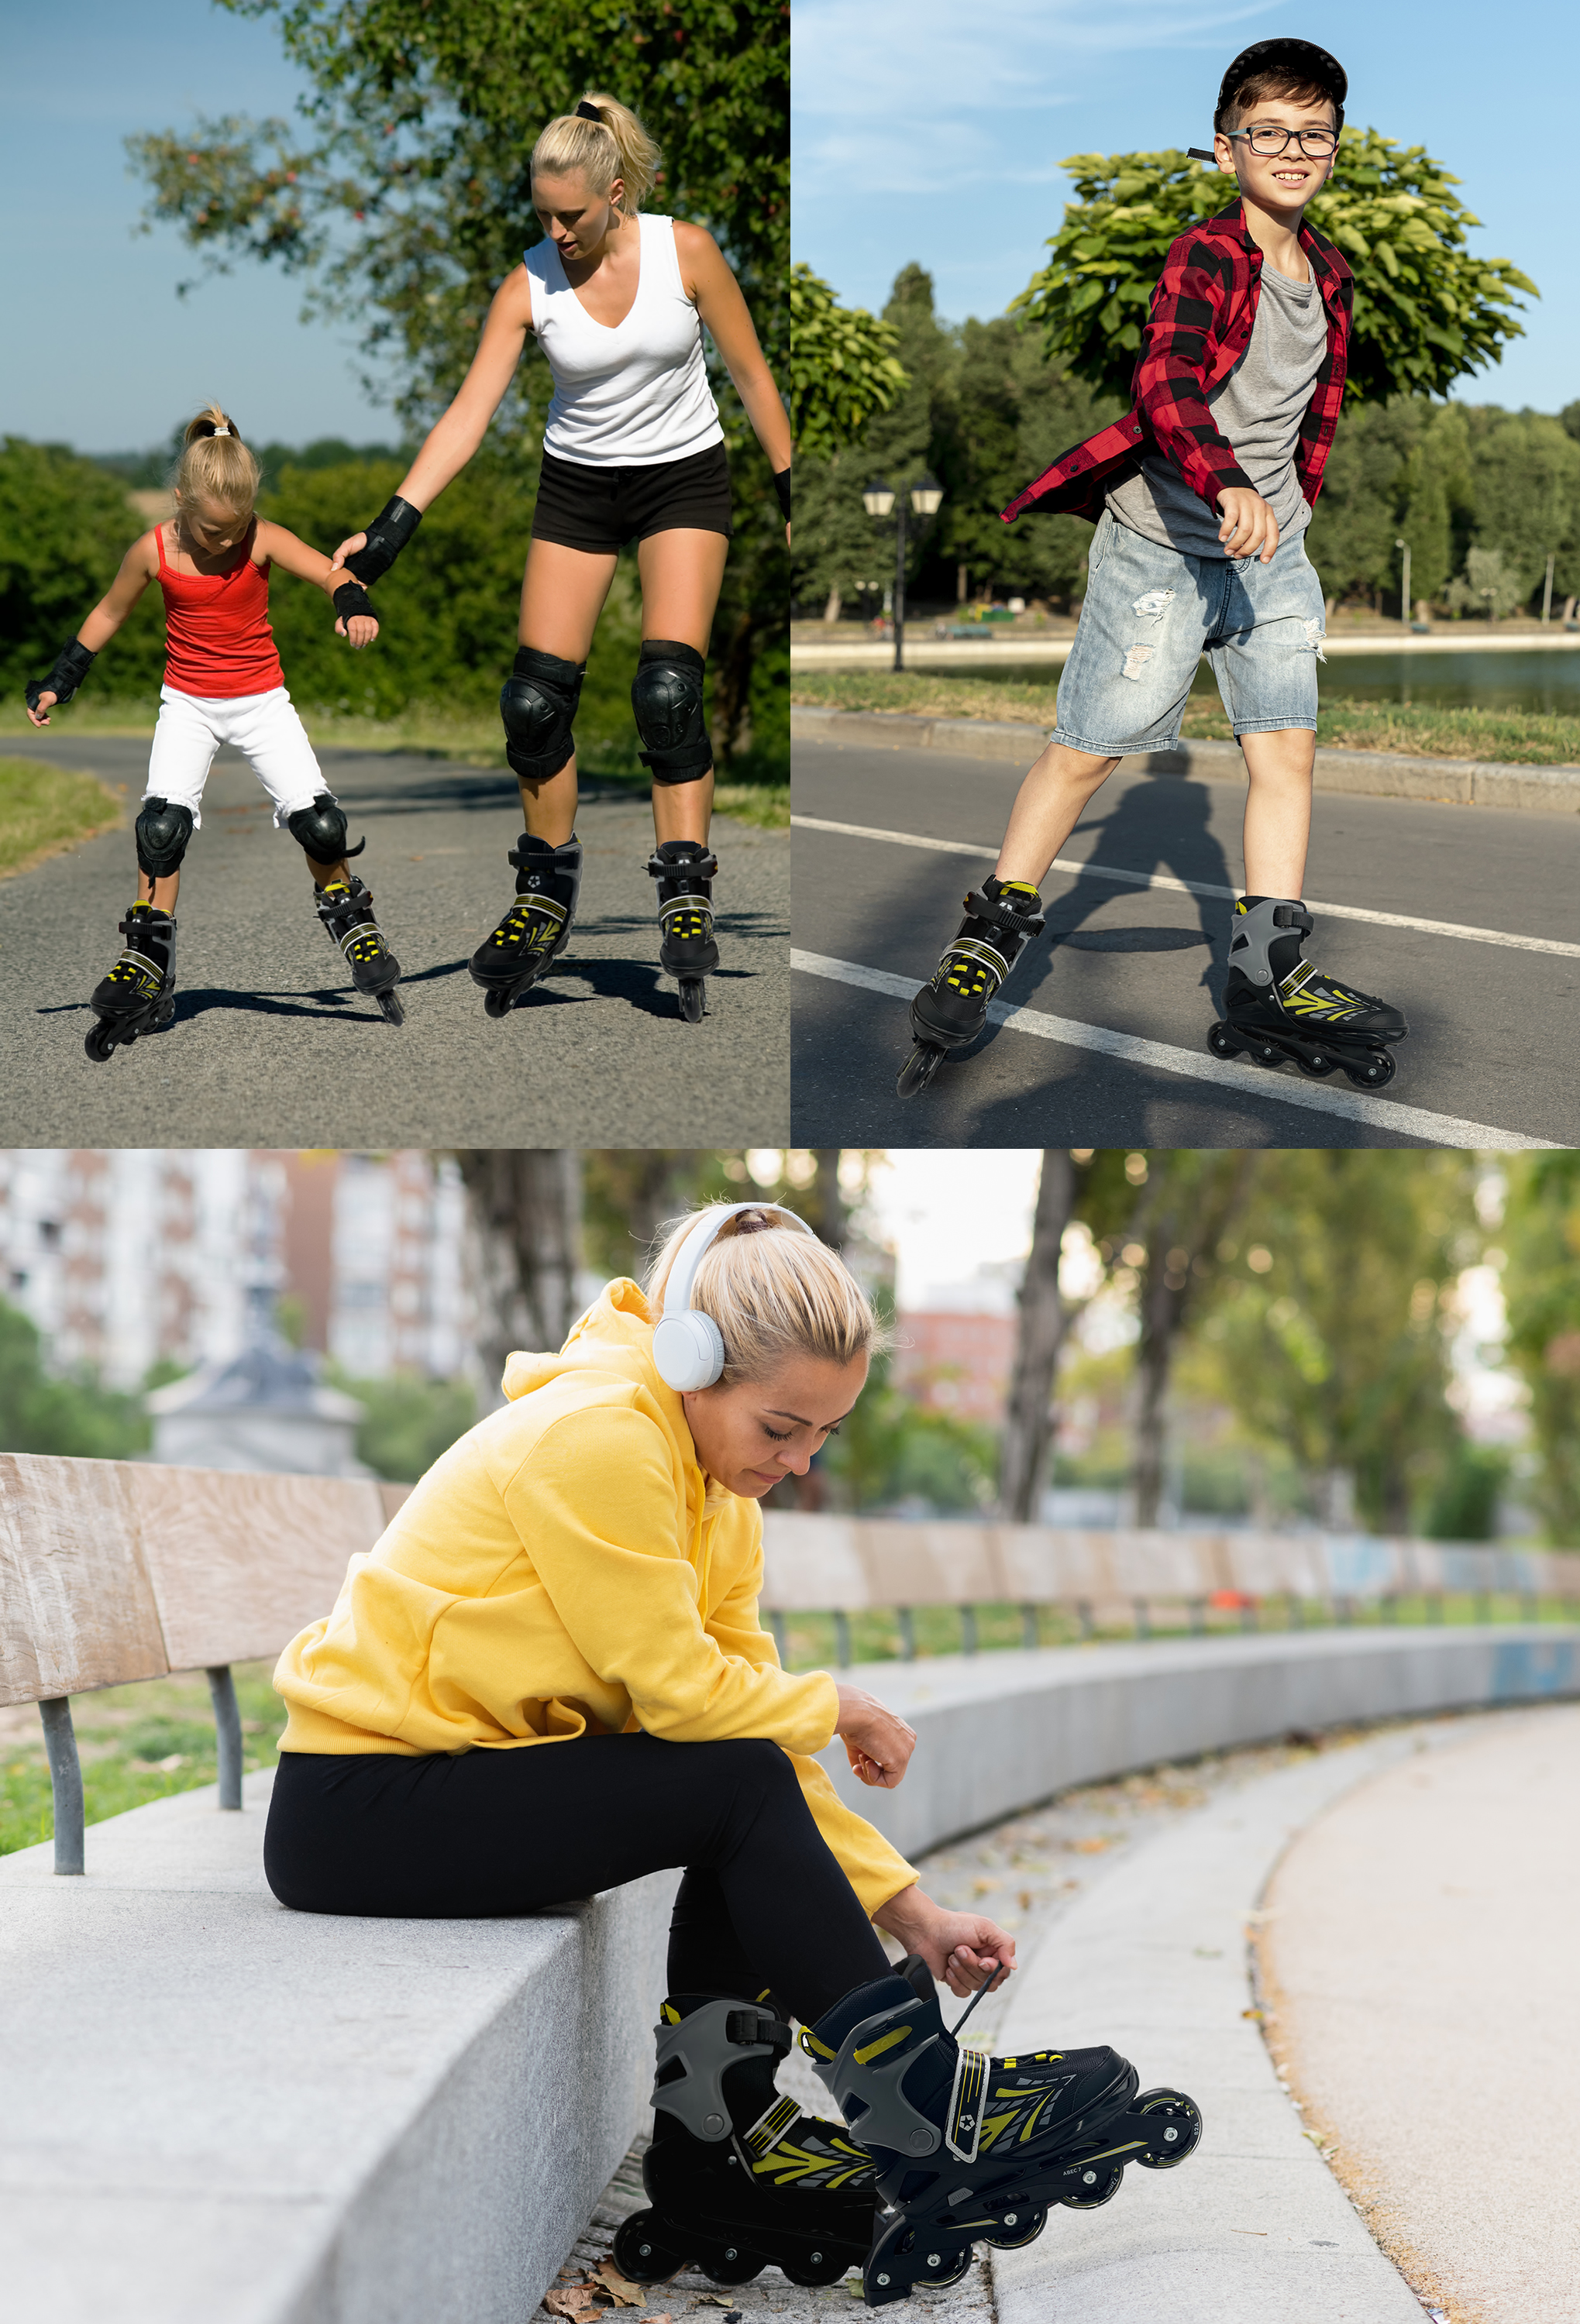 Inliner Skate Soft-Boot Kinder Jugend Damen Größenverstellung 5 Größen  verstellbar Stripes Gelb | L.A. Sports Markenwelt